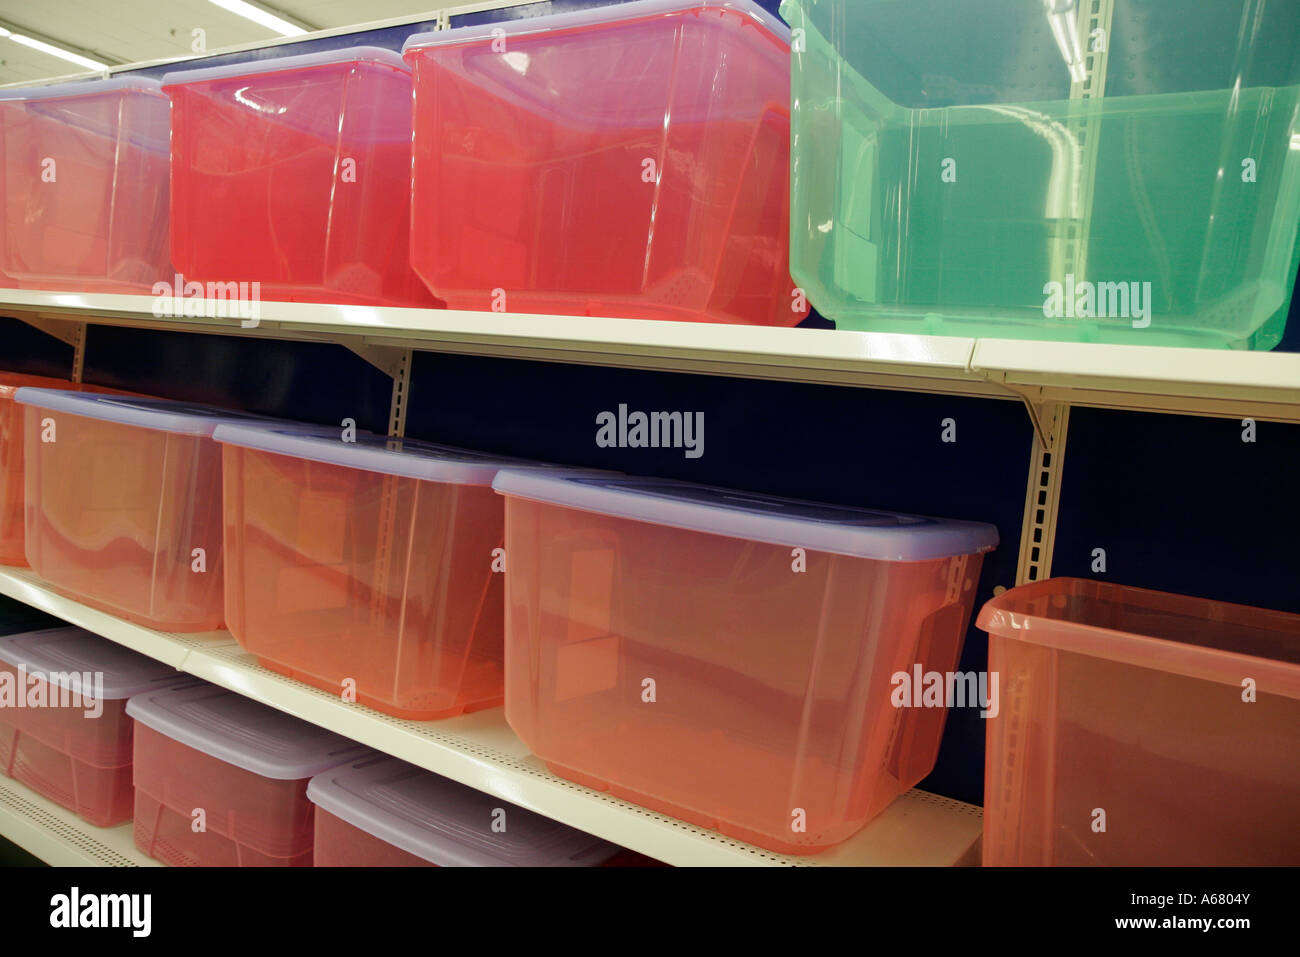 Miami Florida,Kmart Big-Box,contenedores de plástico para al por menor,venta de cajas de exhibición,mercancía,embalaje,marcas,varios colores,visitantes de viaje t Fotografía de stock - Alamy